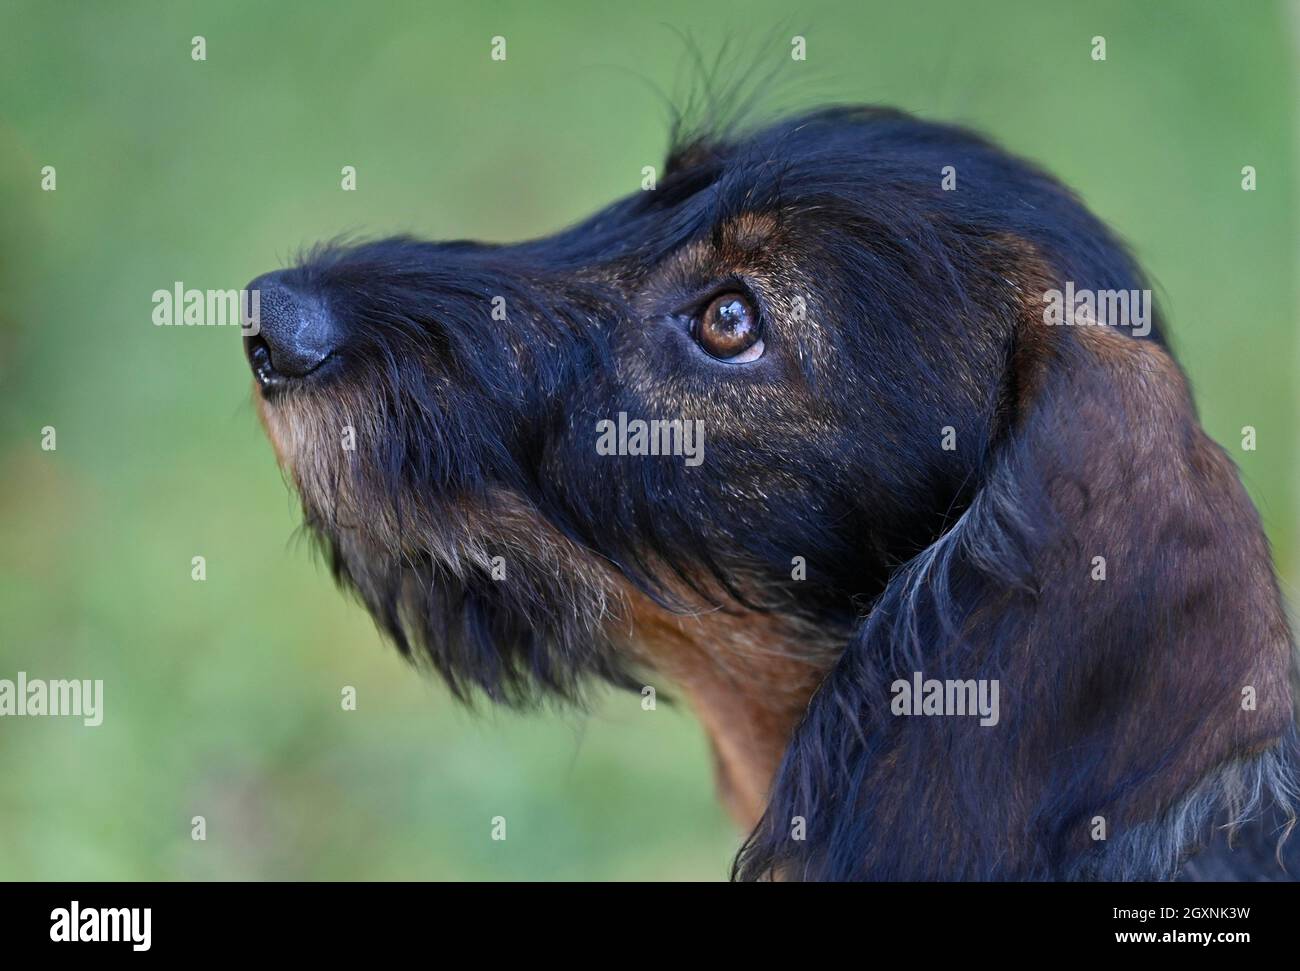 Dackel-Optik, Drahthaardackel (Canis lupus familiaris) Welpe, männlich, 4 Monate, Tierportrait, Baden-Württemberg, Deutschland Stockfoto